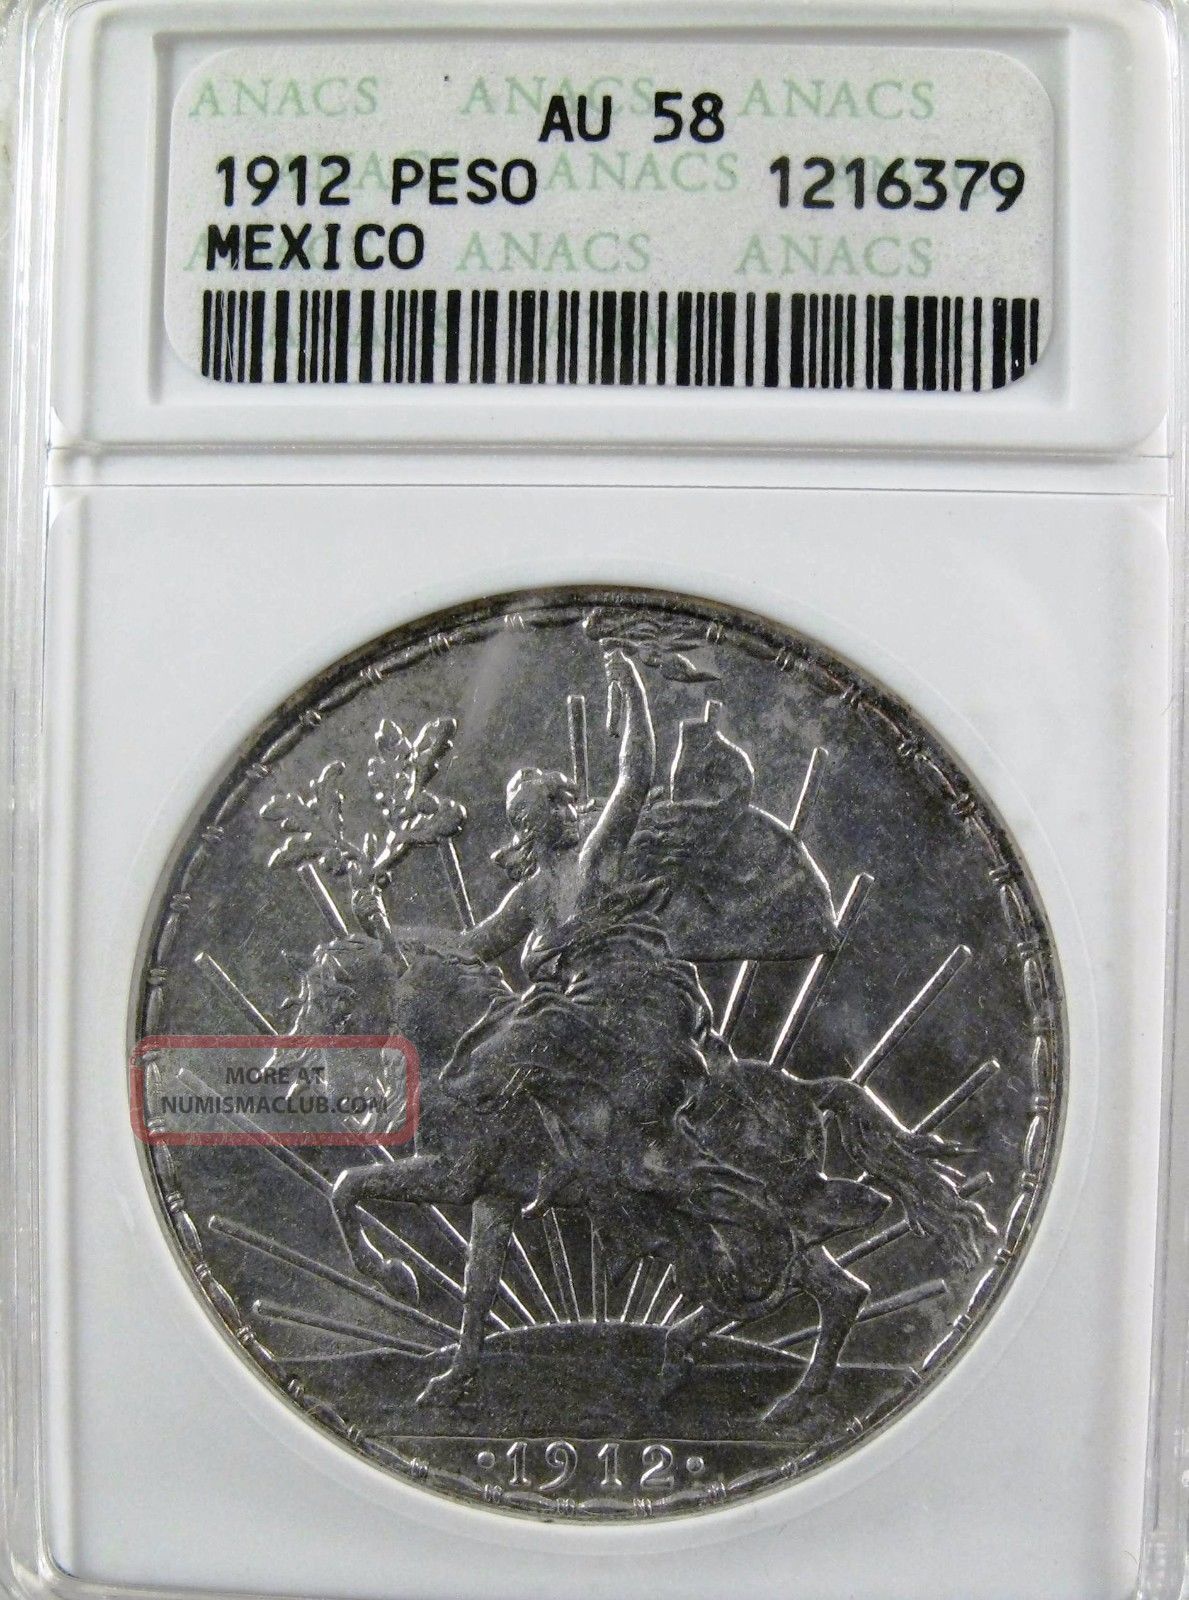 Mexico 1912 Silver Caballito Peso, Anacs Au 58 A Coin.